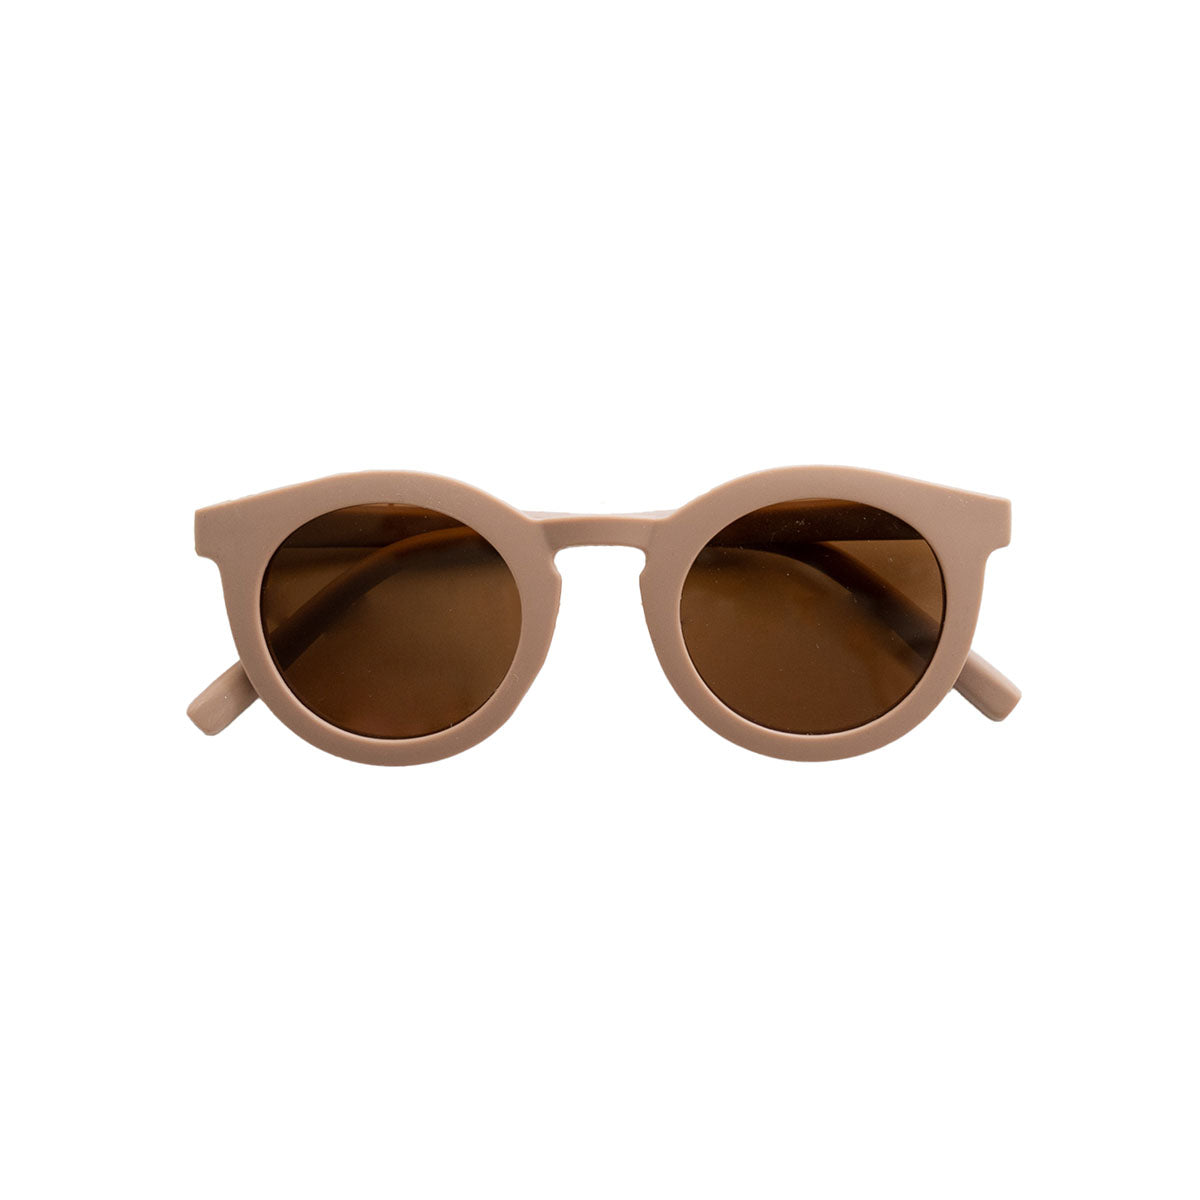 De Grech & co. zonnebril classic adult in de kleur burlwood is de perfecte keuze voor trendy en modebewuste moeders en hun mini-me’s. De zonnebril is namelijk ook beschikbaar voor kinderen! VanZus